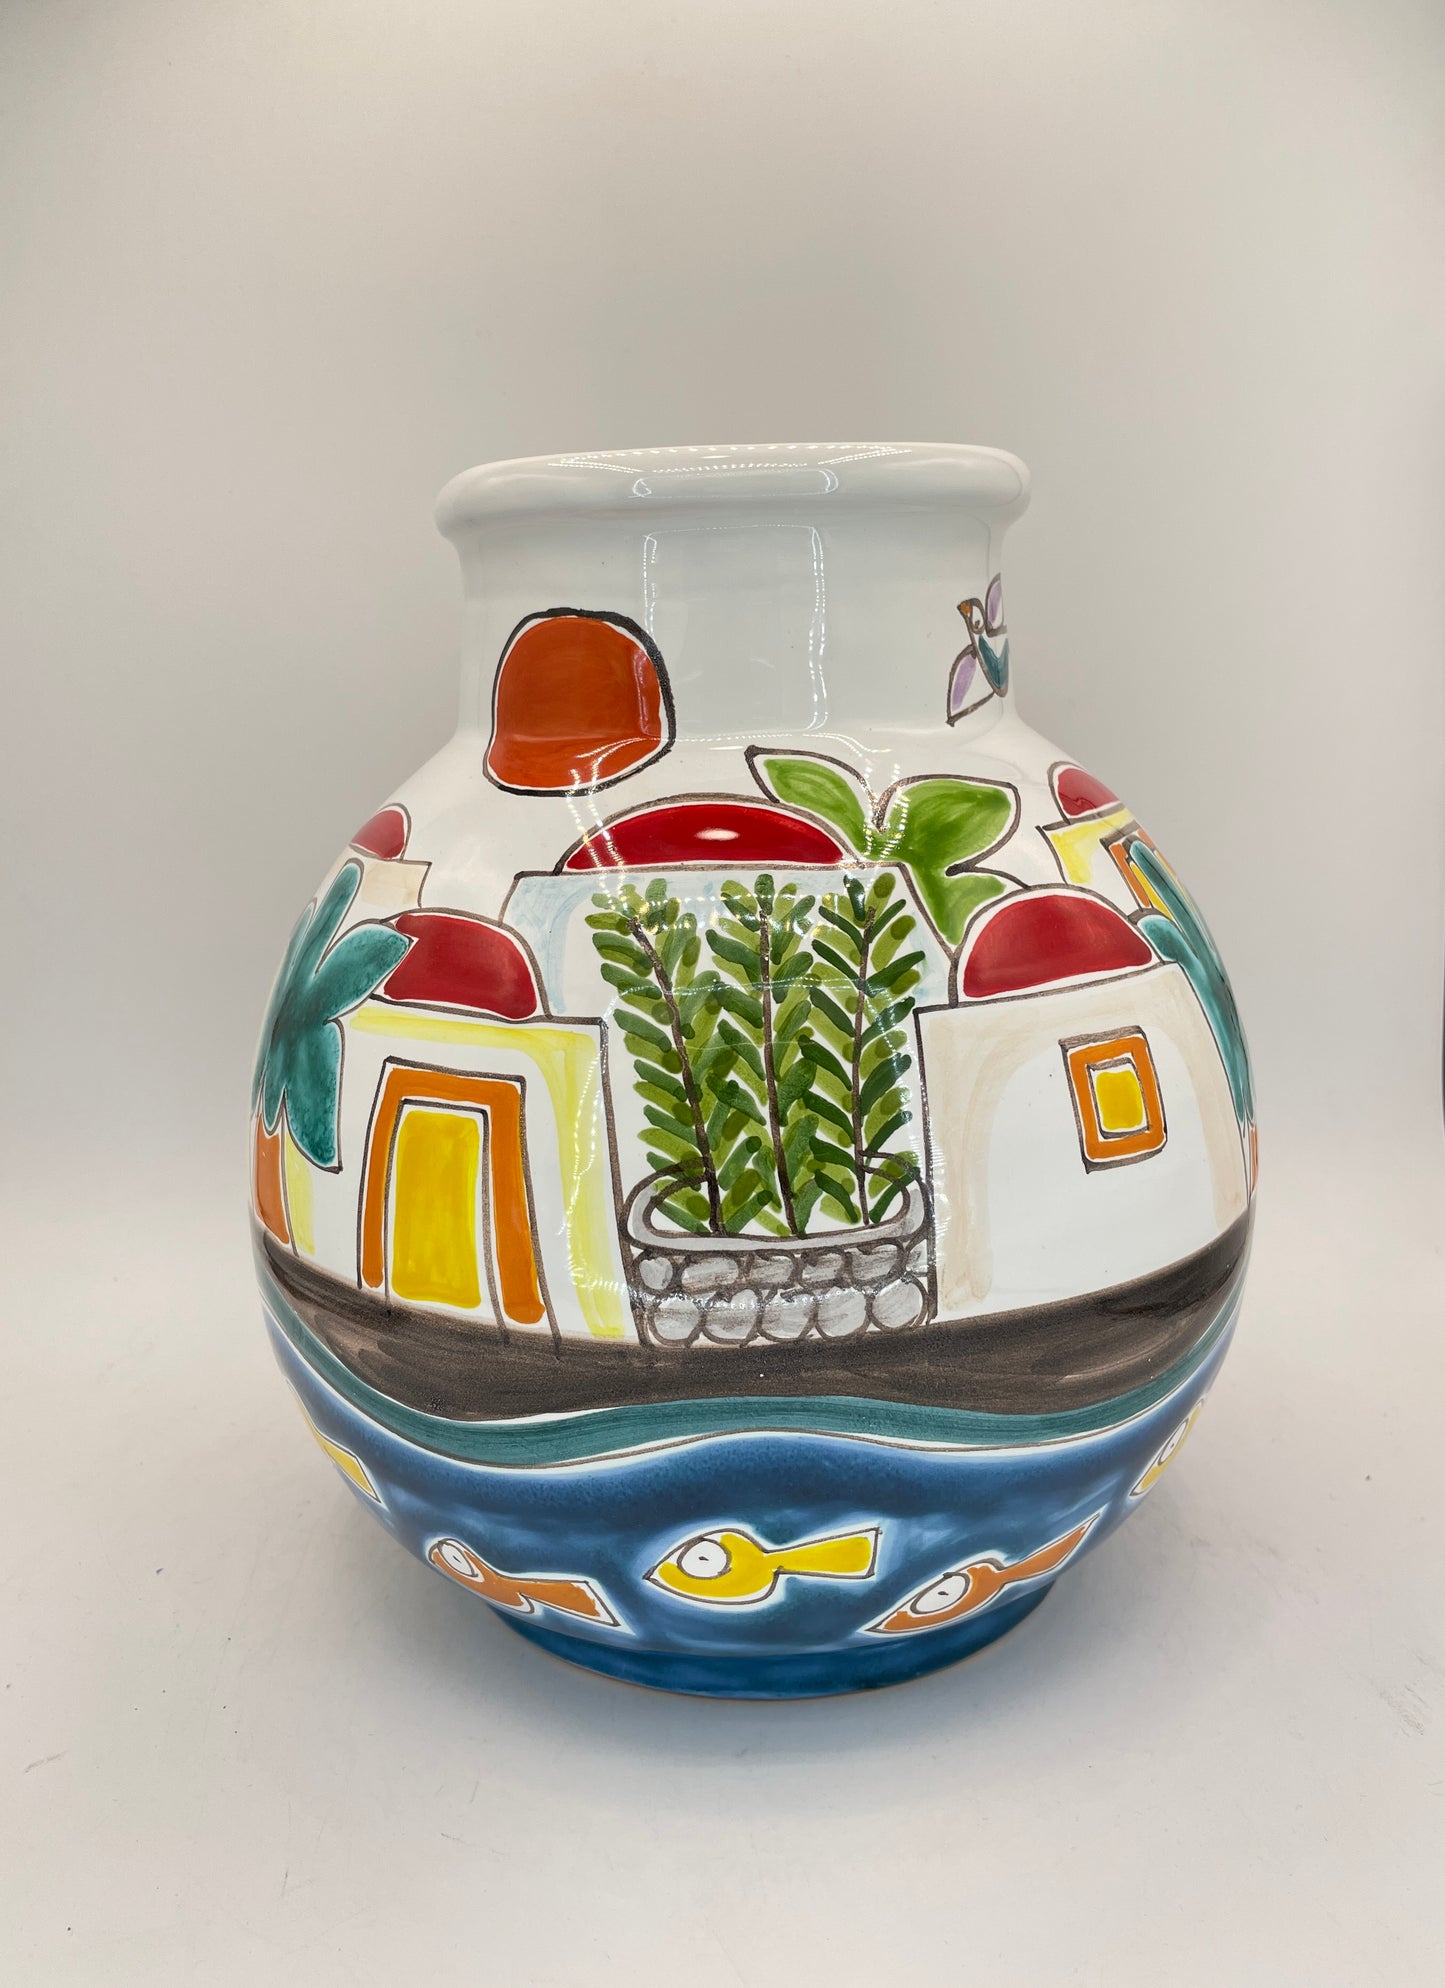 Pantelleria vase